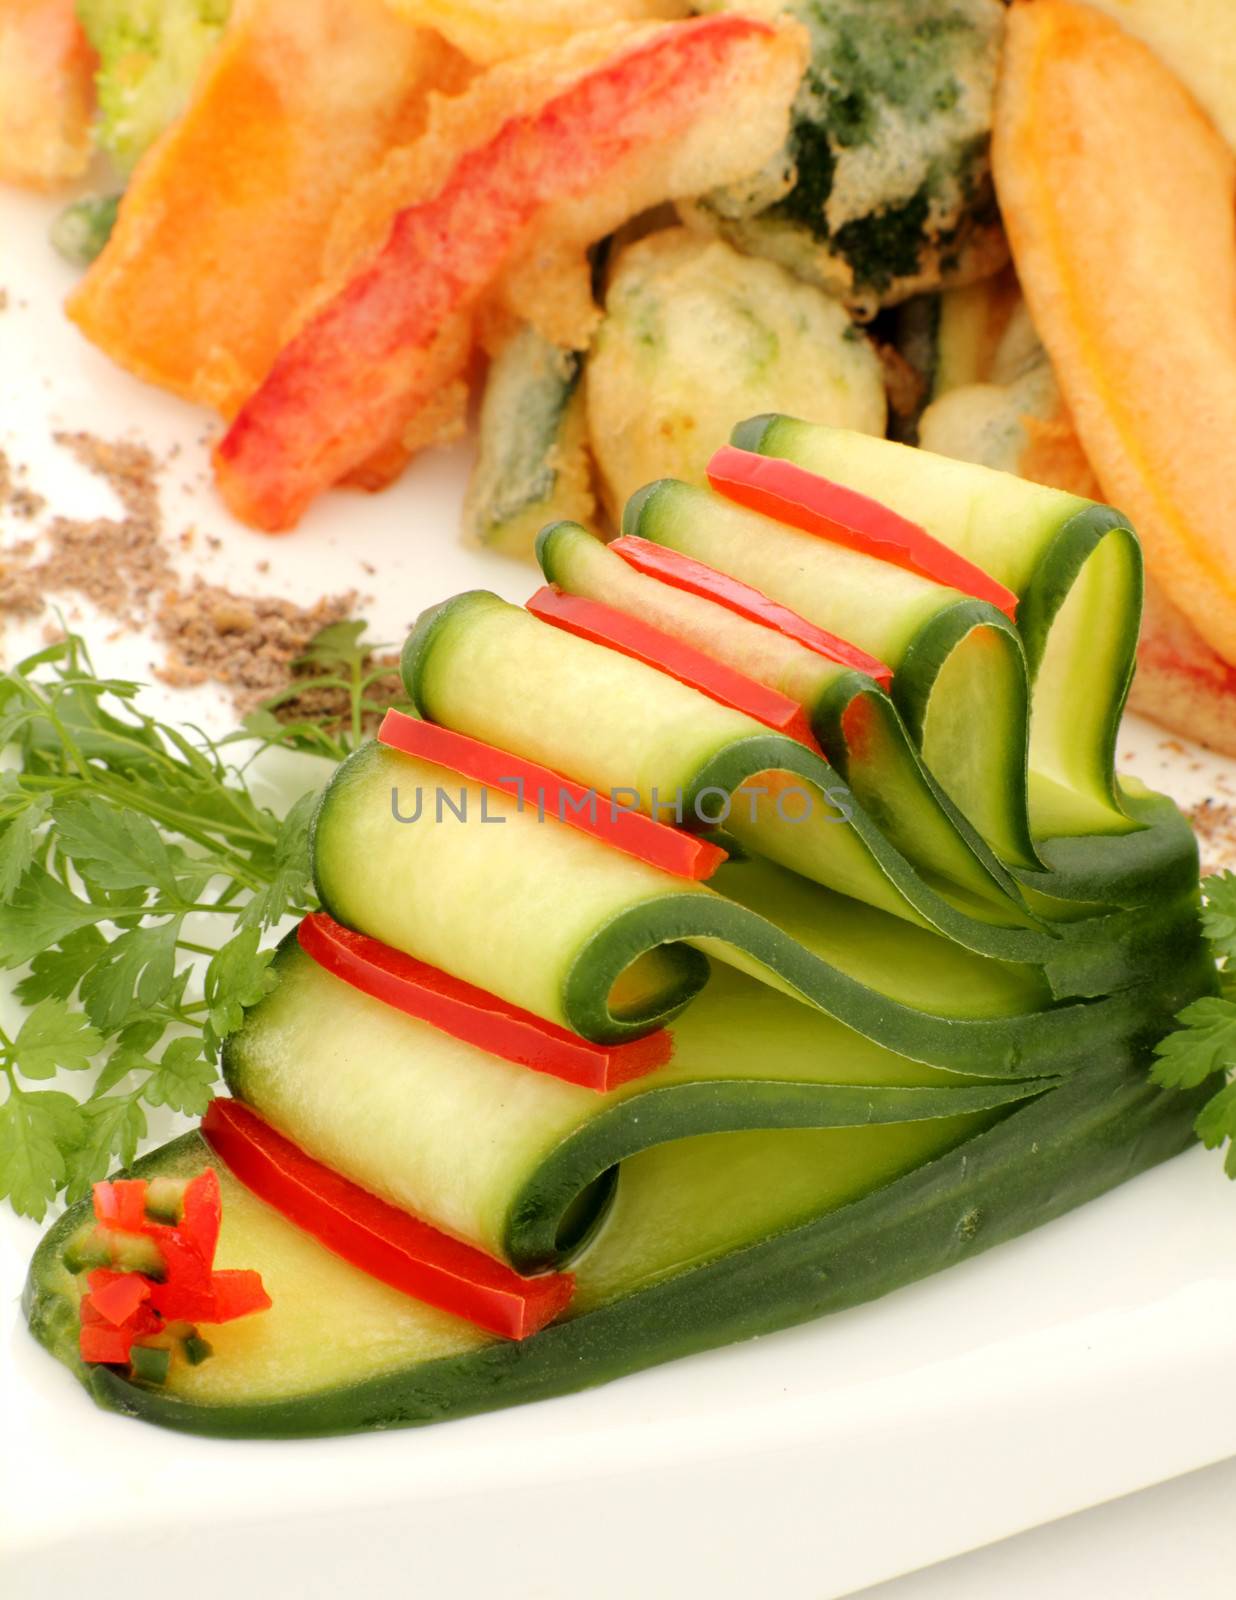 Sliced Cucumber And Capsicum by jabiru